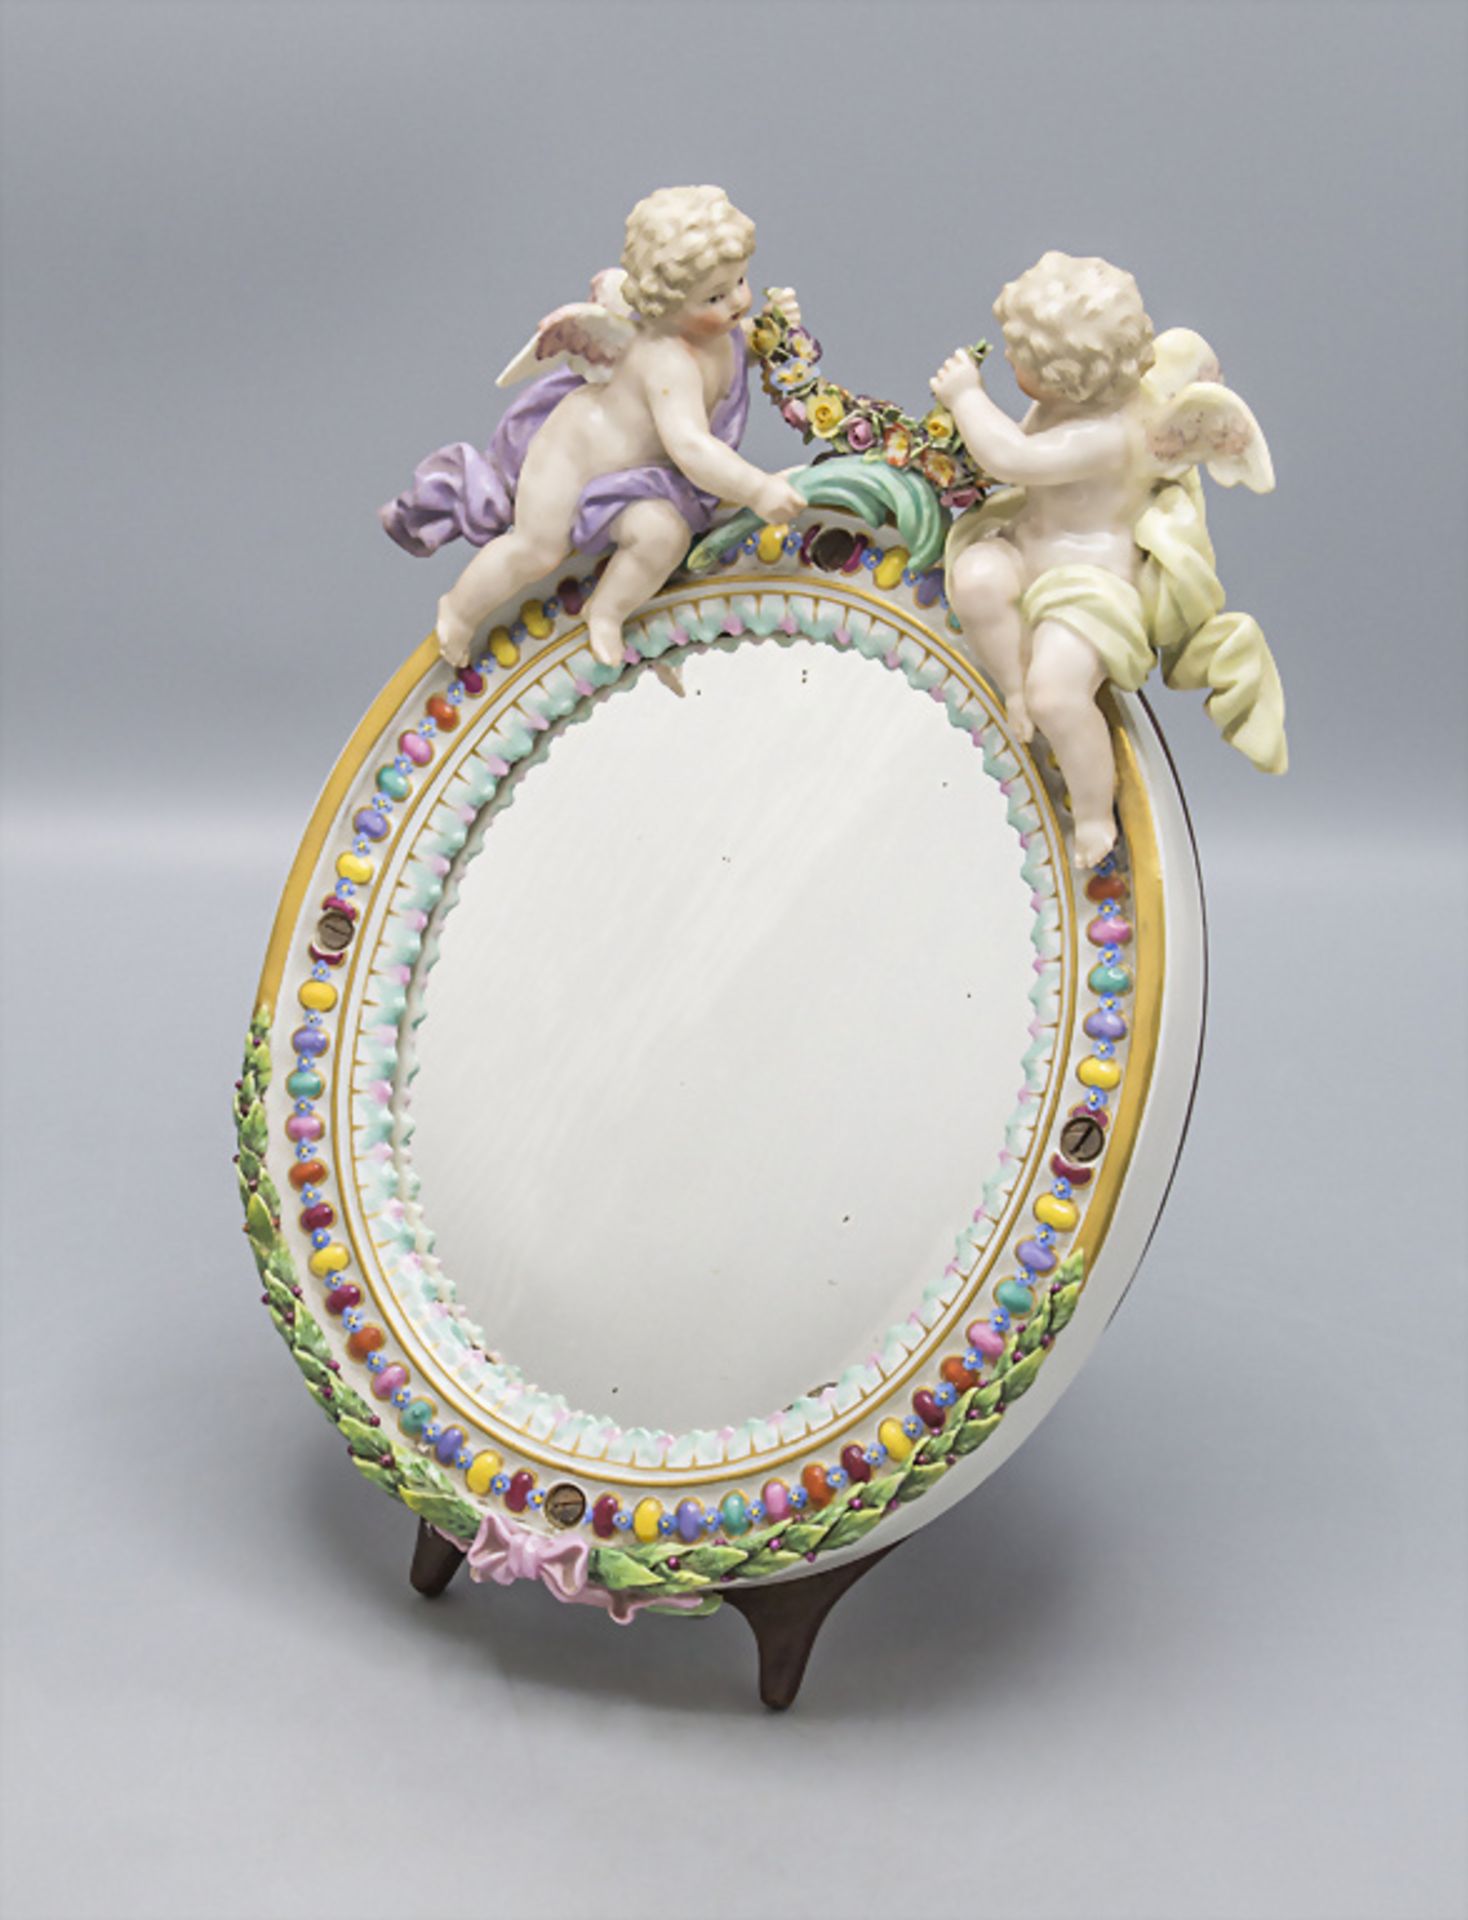 Ovaler Tischspiegel mit 2 Putten / An oval mirror with 2 cherubs, Meissen, Mitte 19. Jh.